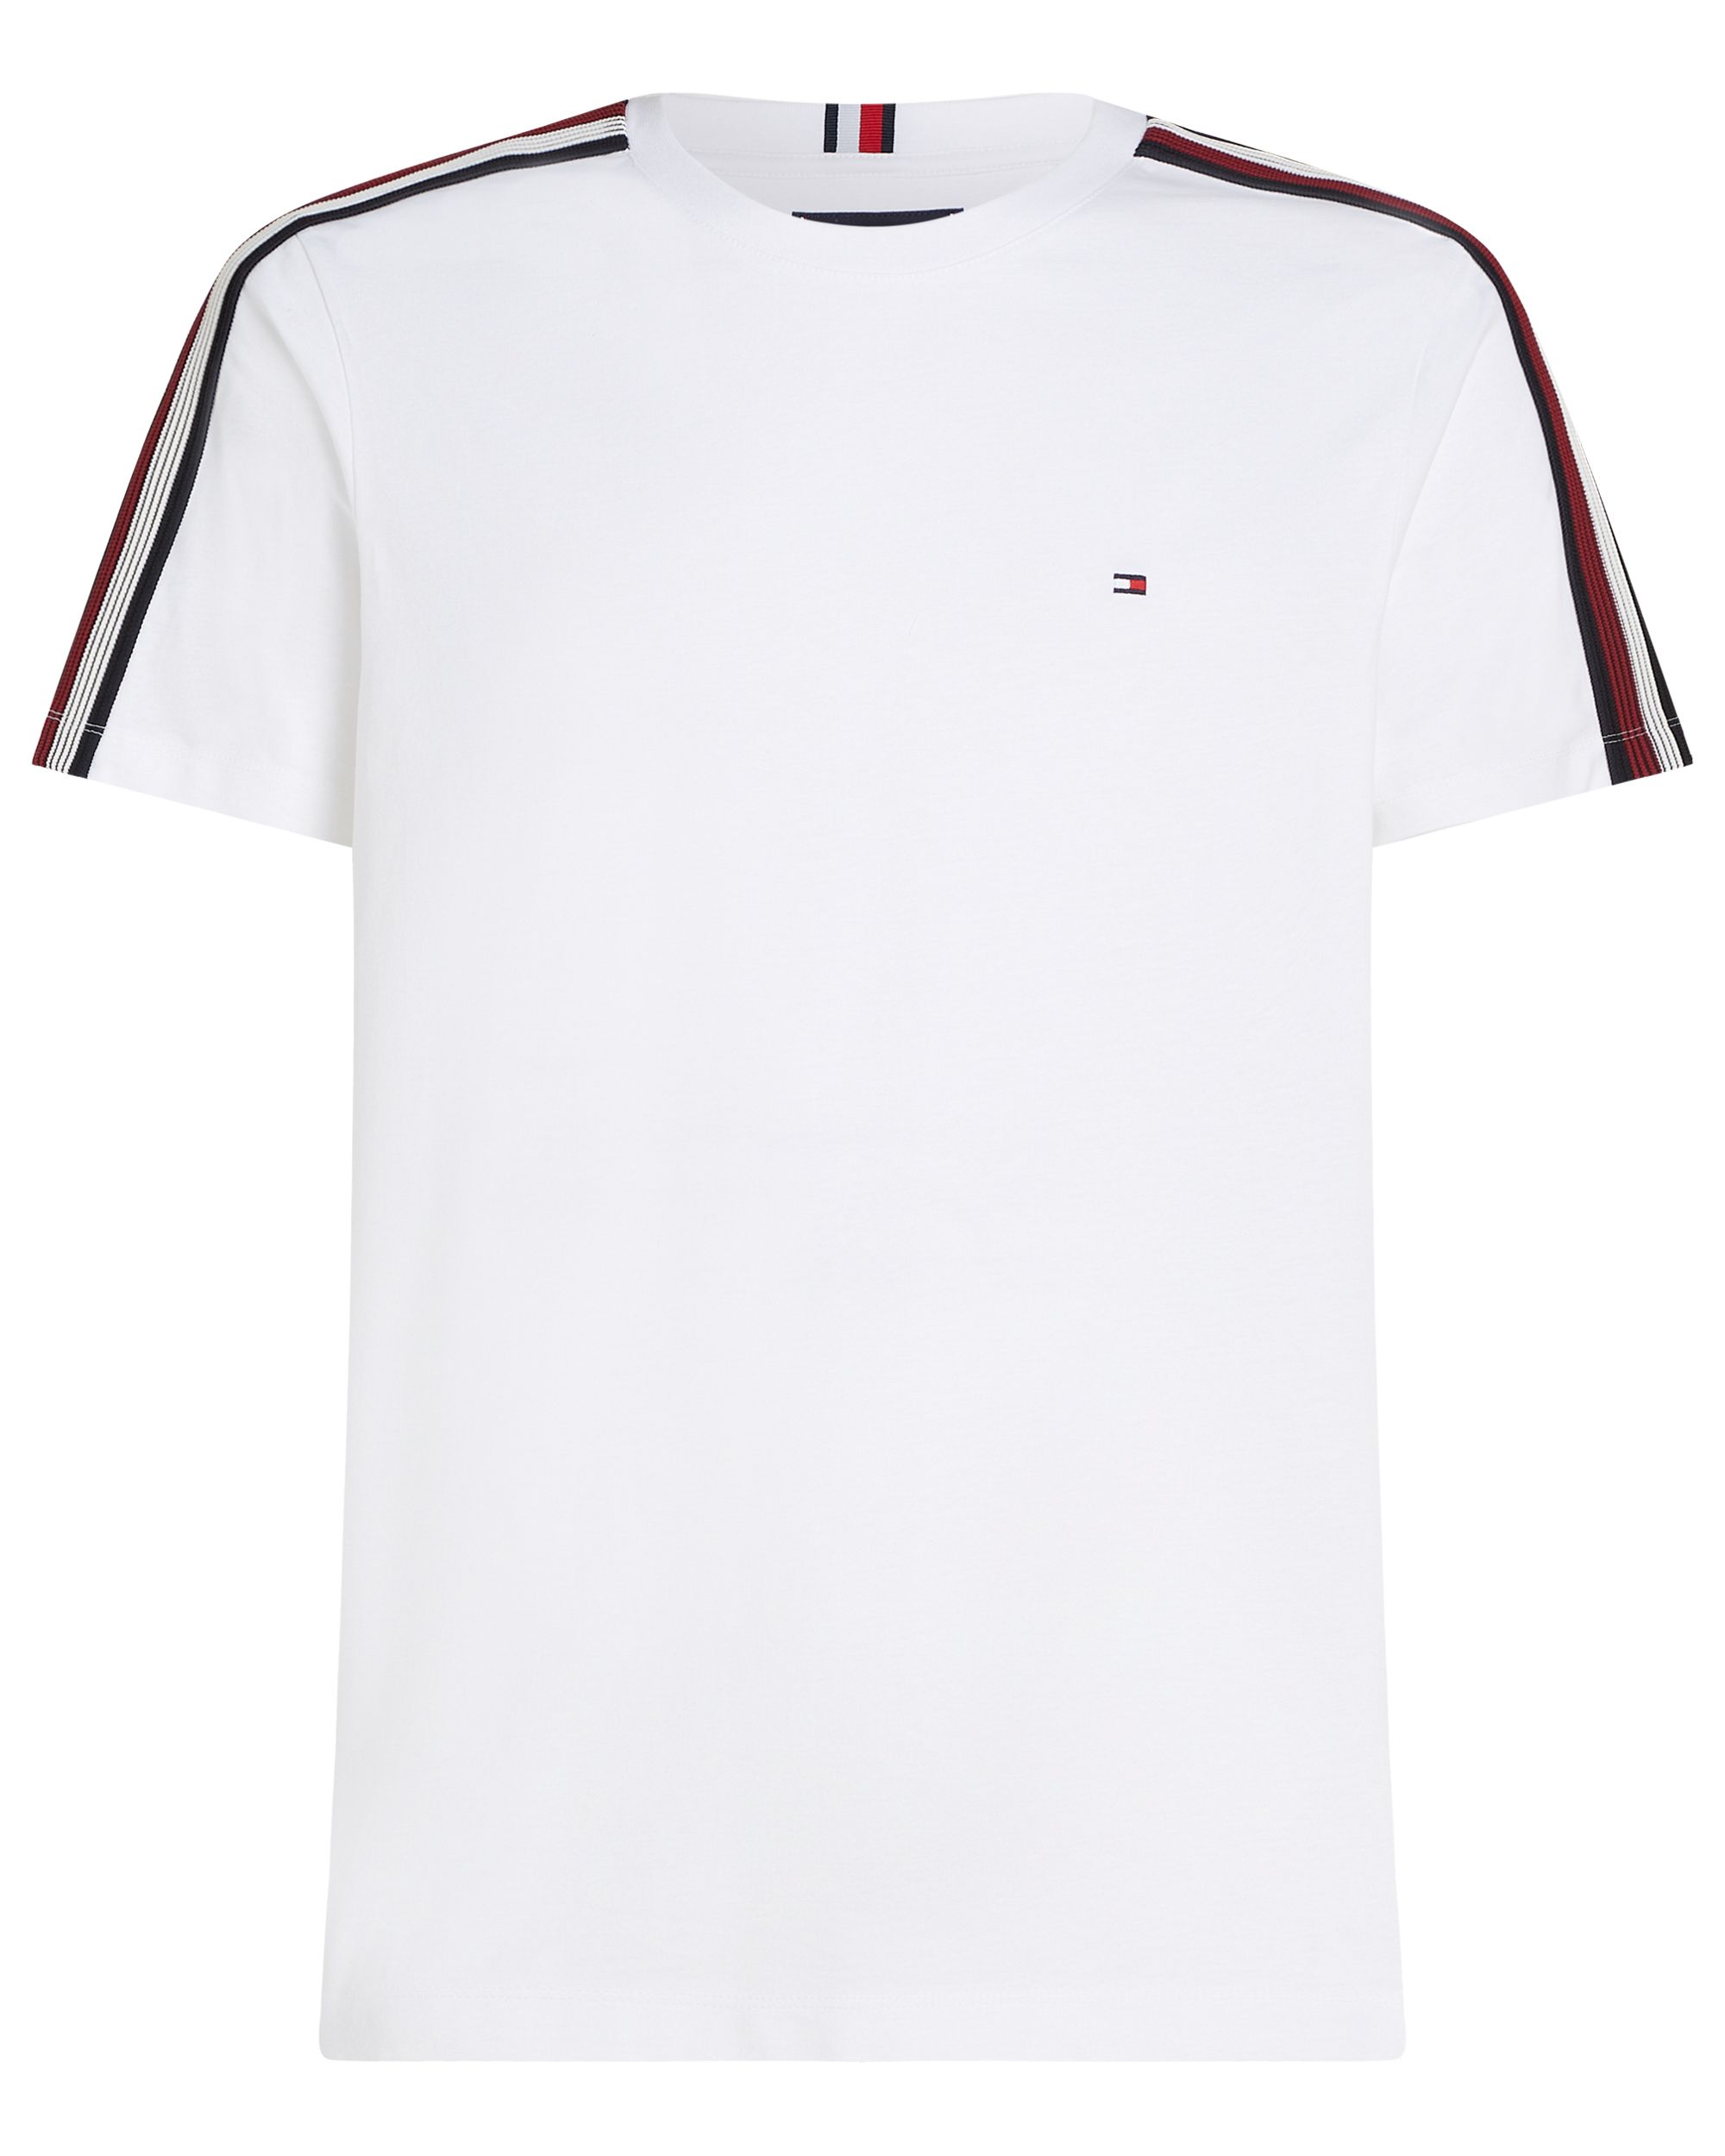 Tommy Hilfiger Menswear T-shirt KM Grijs 095365-001-M